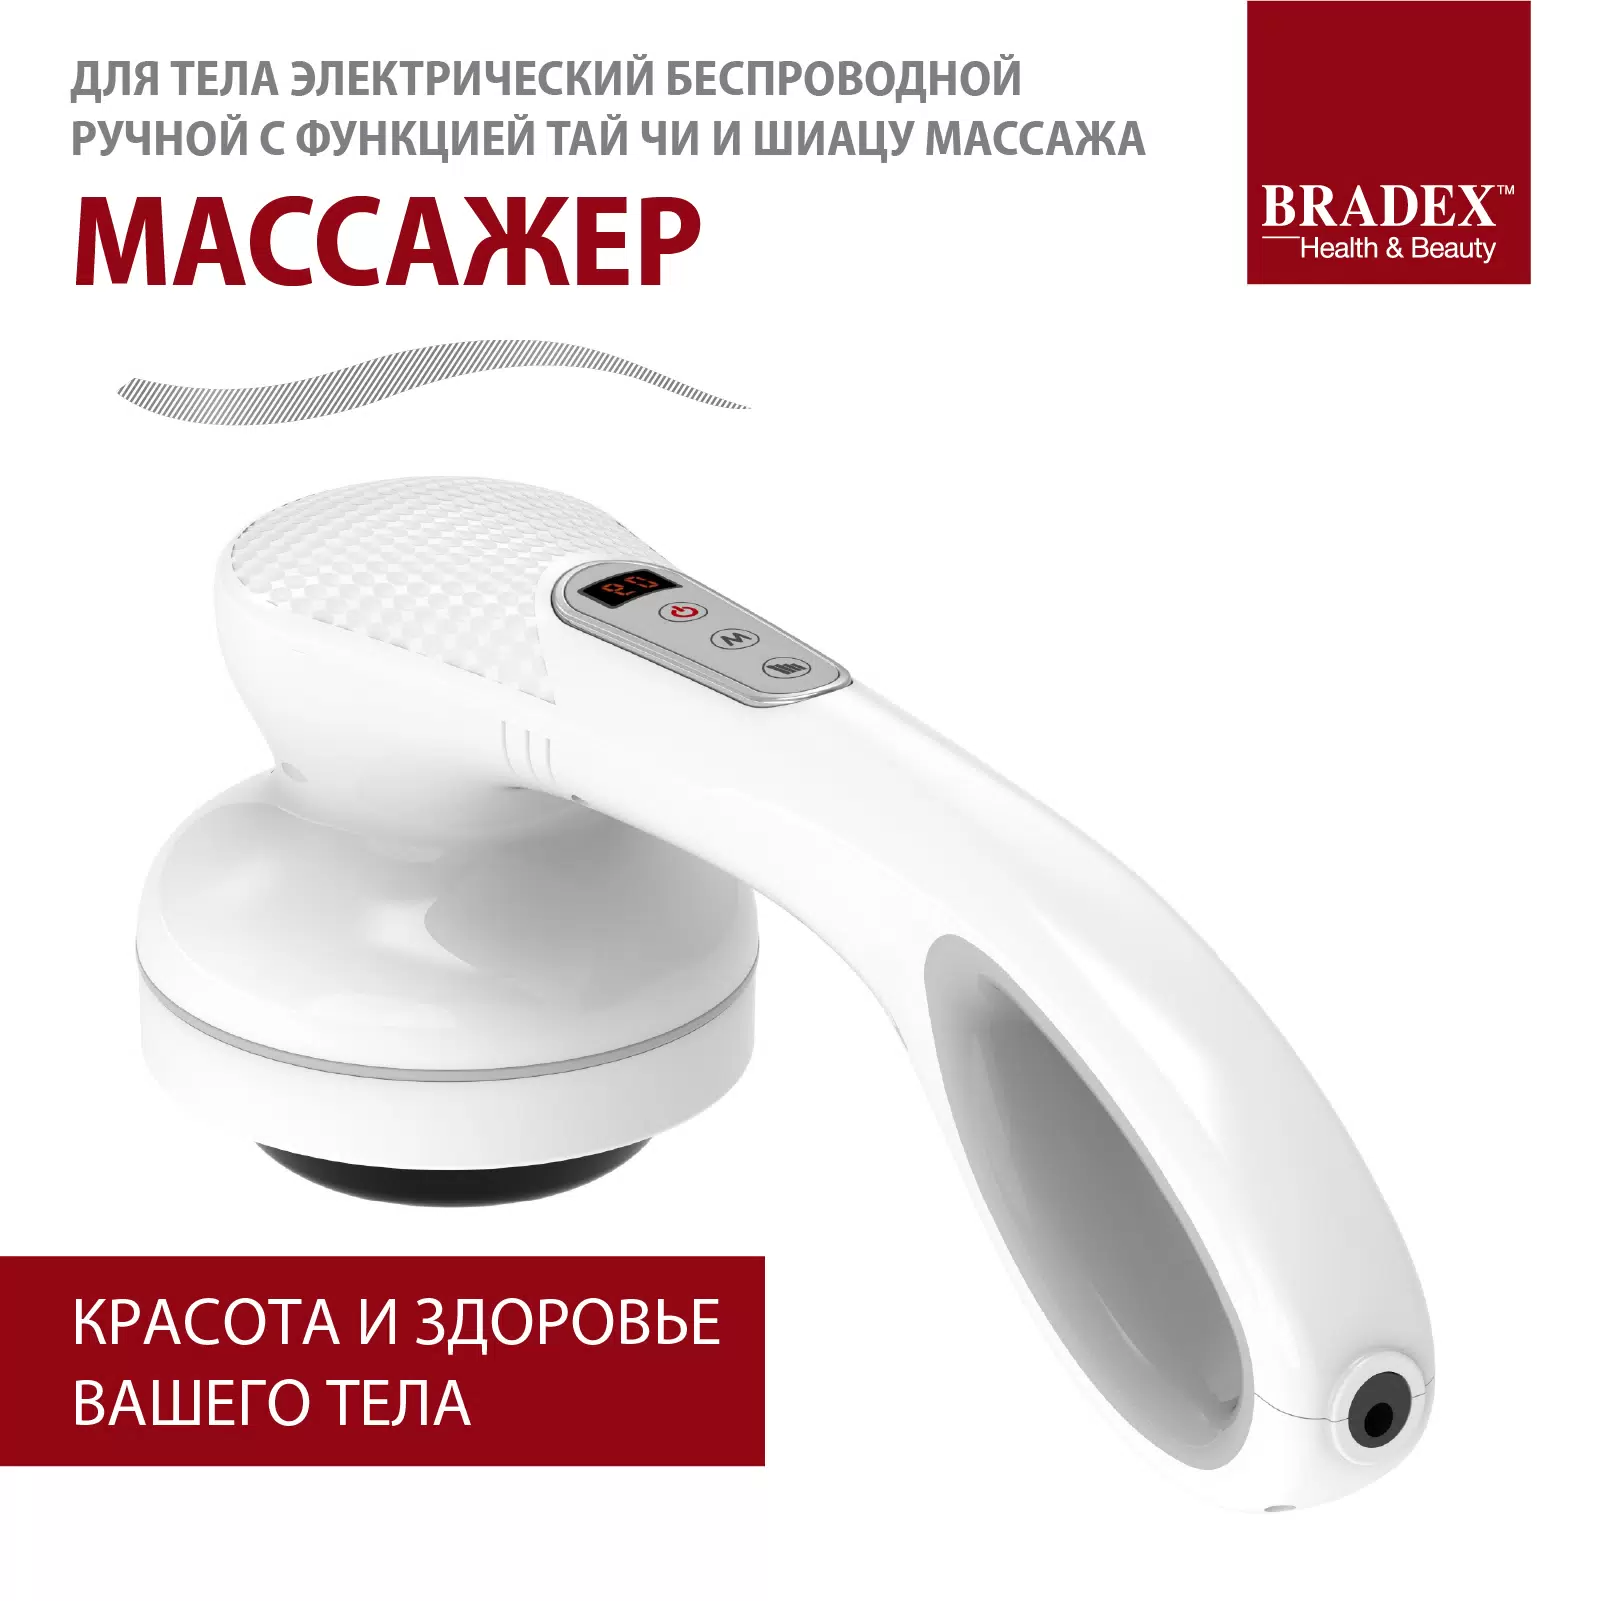 Массажер для тела Bradex беспроводной с функцией Тай Чи и Шиацу массажа KZ 0568 - VLARNIKA в Донецке